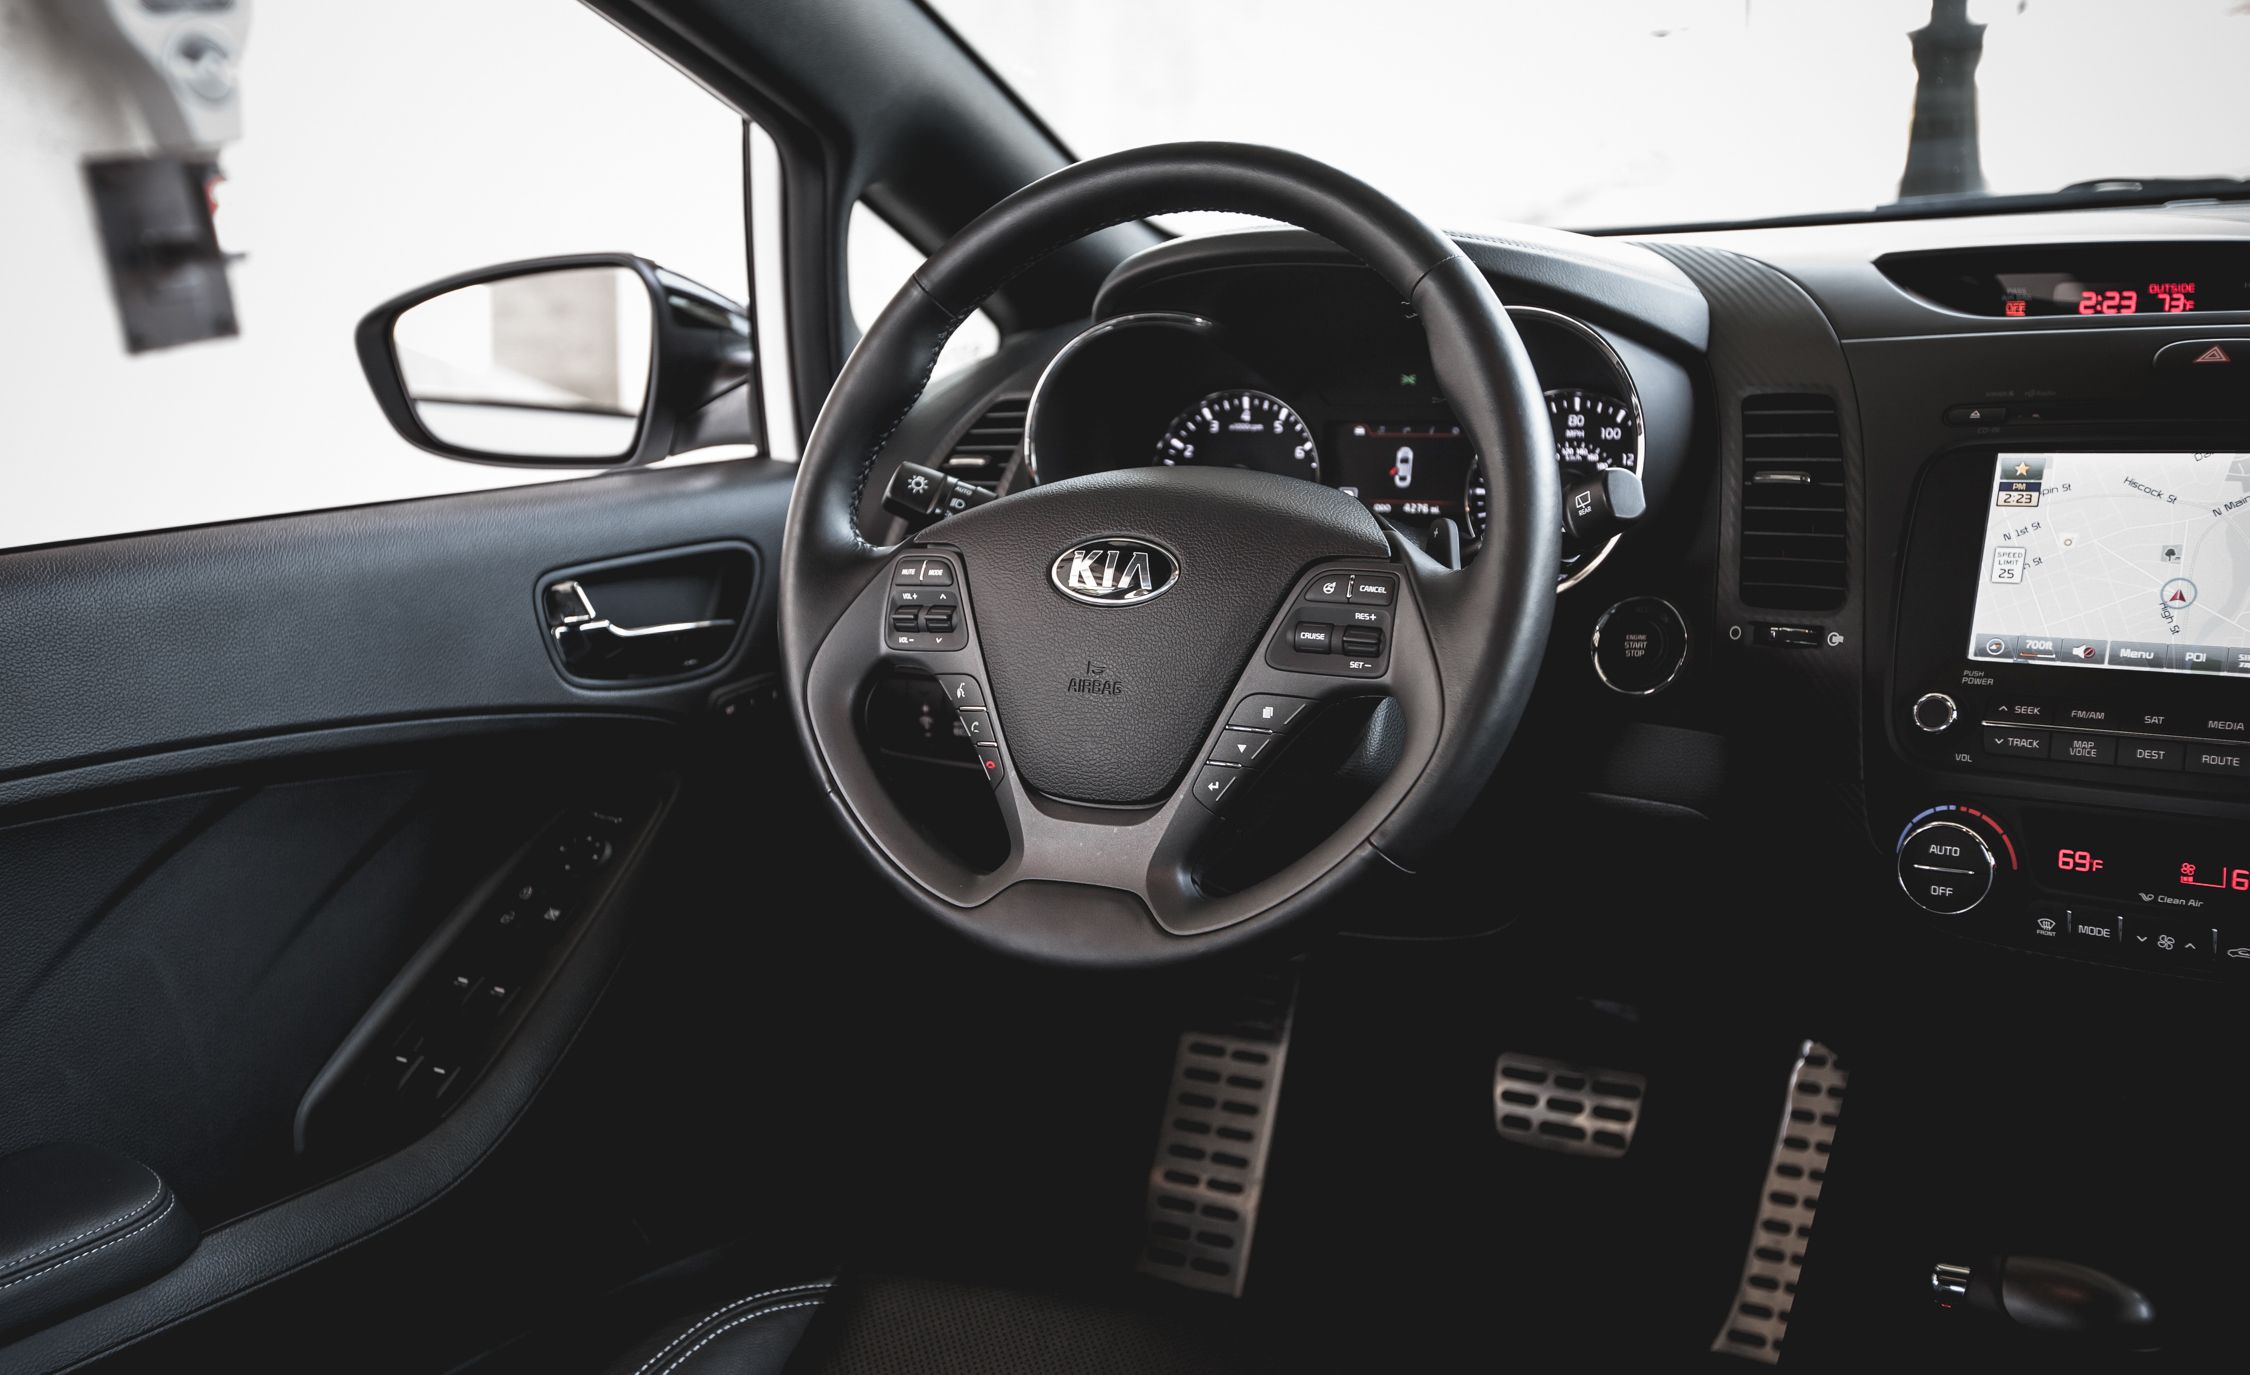 2014 Kia Forte5 SX Turbo Interior (View 14 of 26)